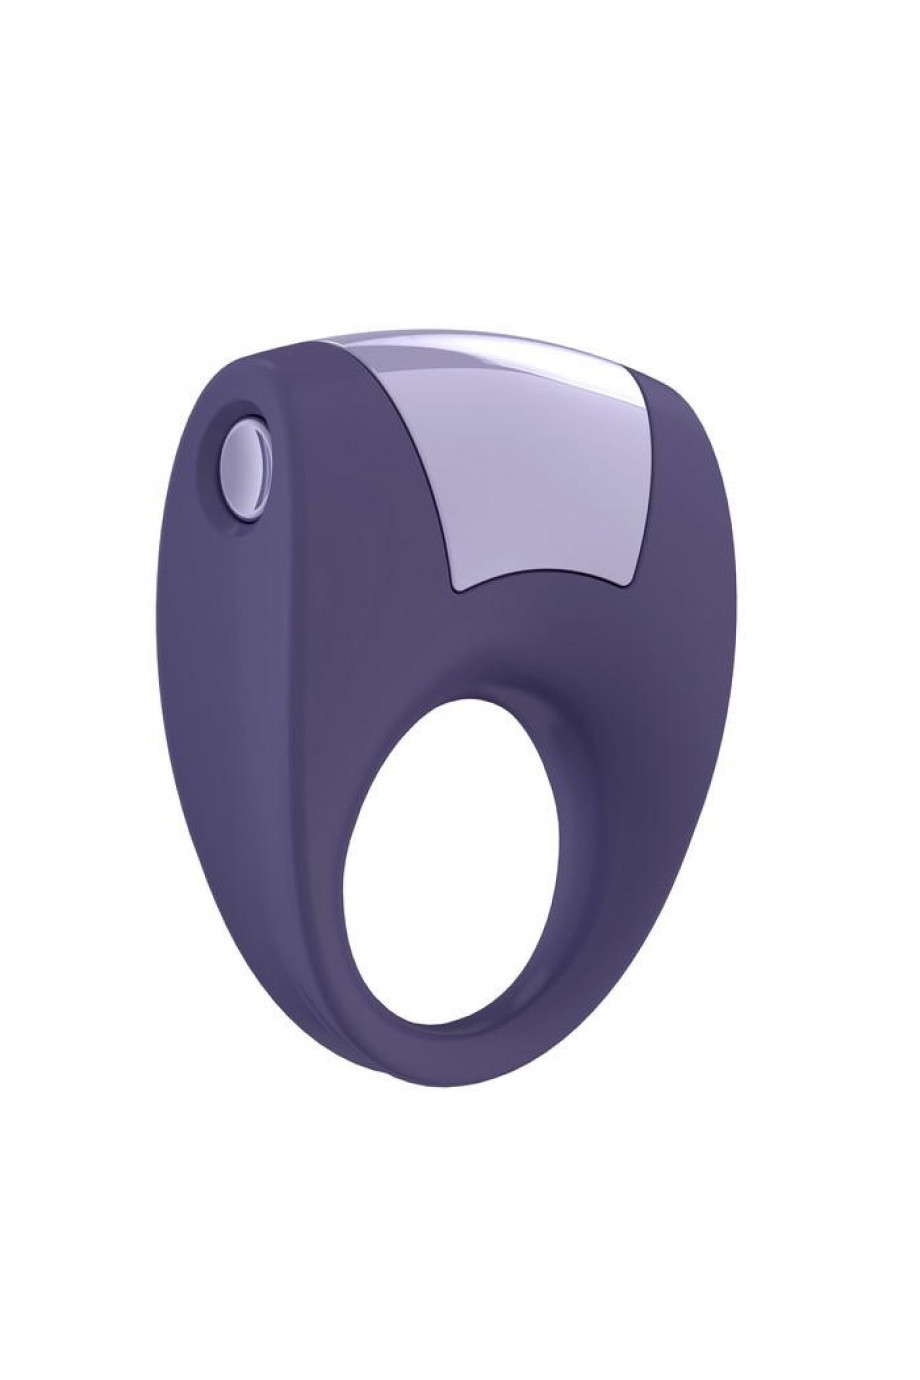 Эрекционное кольцо OVO с удобной кнопкой включения и сильной вибрацией, силиконовое, ежевичное